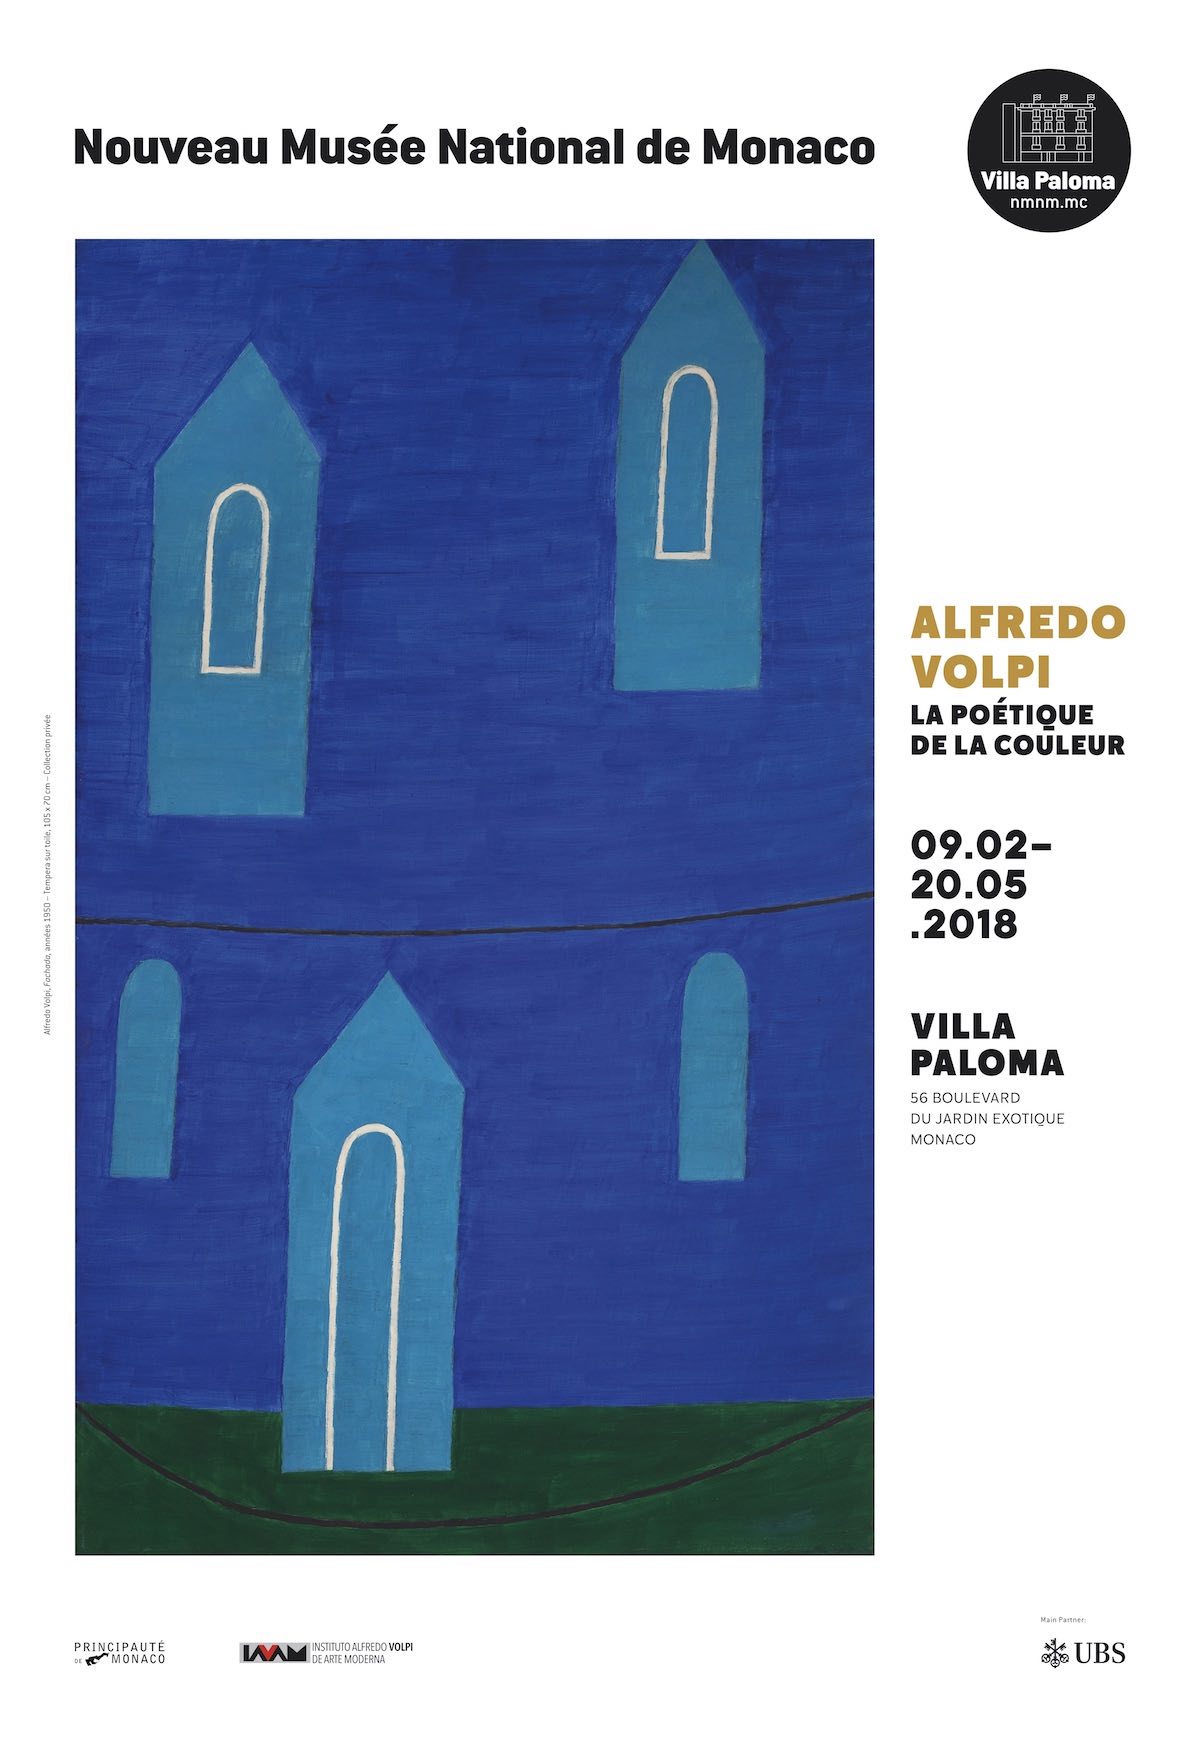 Alfredo Volpi exhibition in Monaco